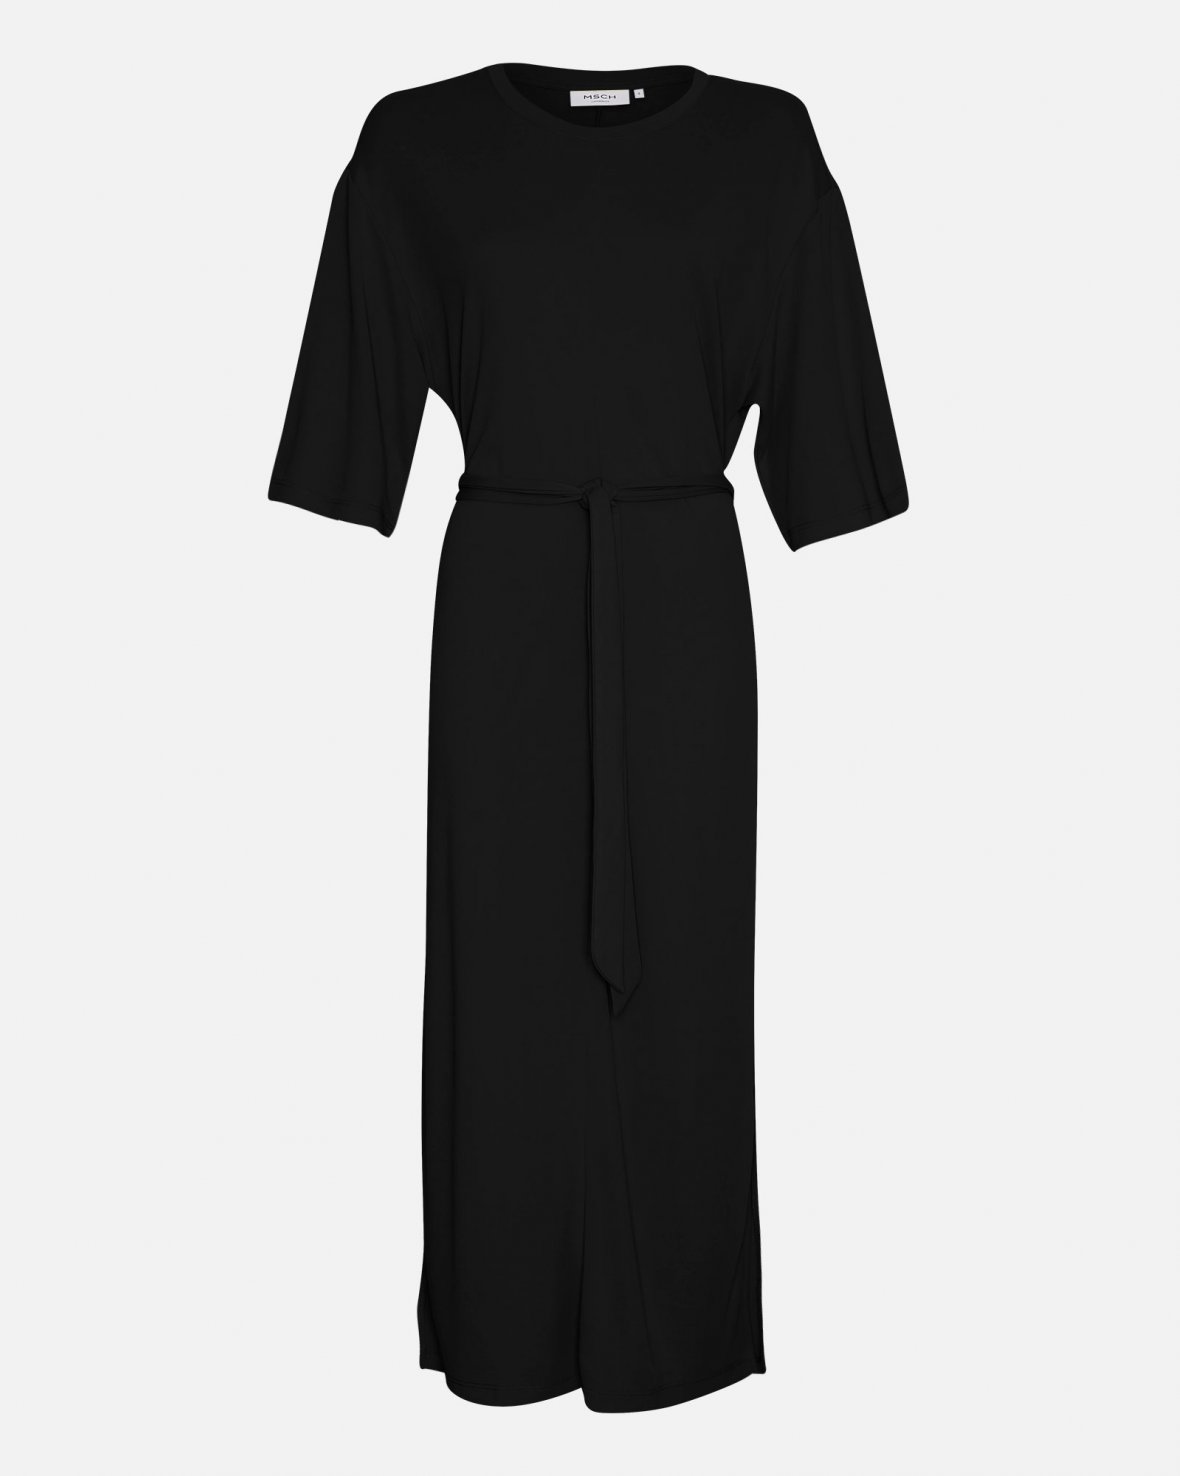 MSCH Copenhagen - MSCHDeanie Lynette 2/4 Dress - Black 2